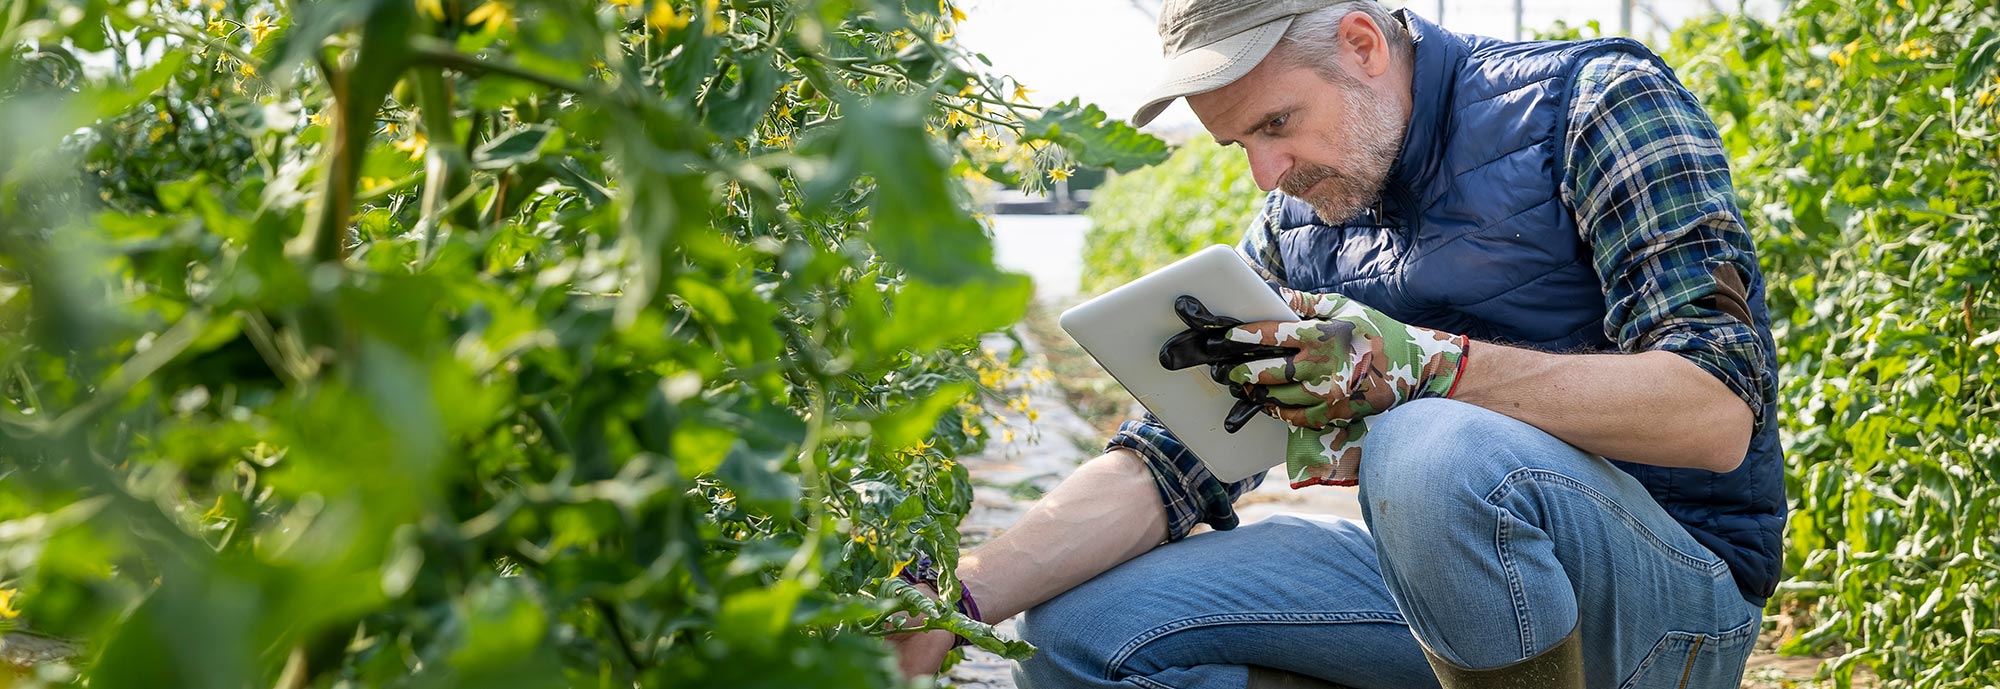 Ein Mann in Gummistiefeln hält ein Tablet und prüft hockend Pflanzen in einem Gewächshaus. 5G ermöglicht virtuelle Rundgänge durch vernetzte Fabriken und treibt damit die Digitalisierung voran.